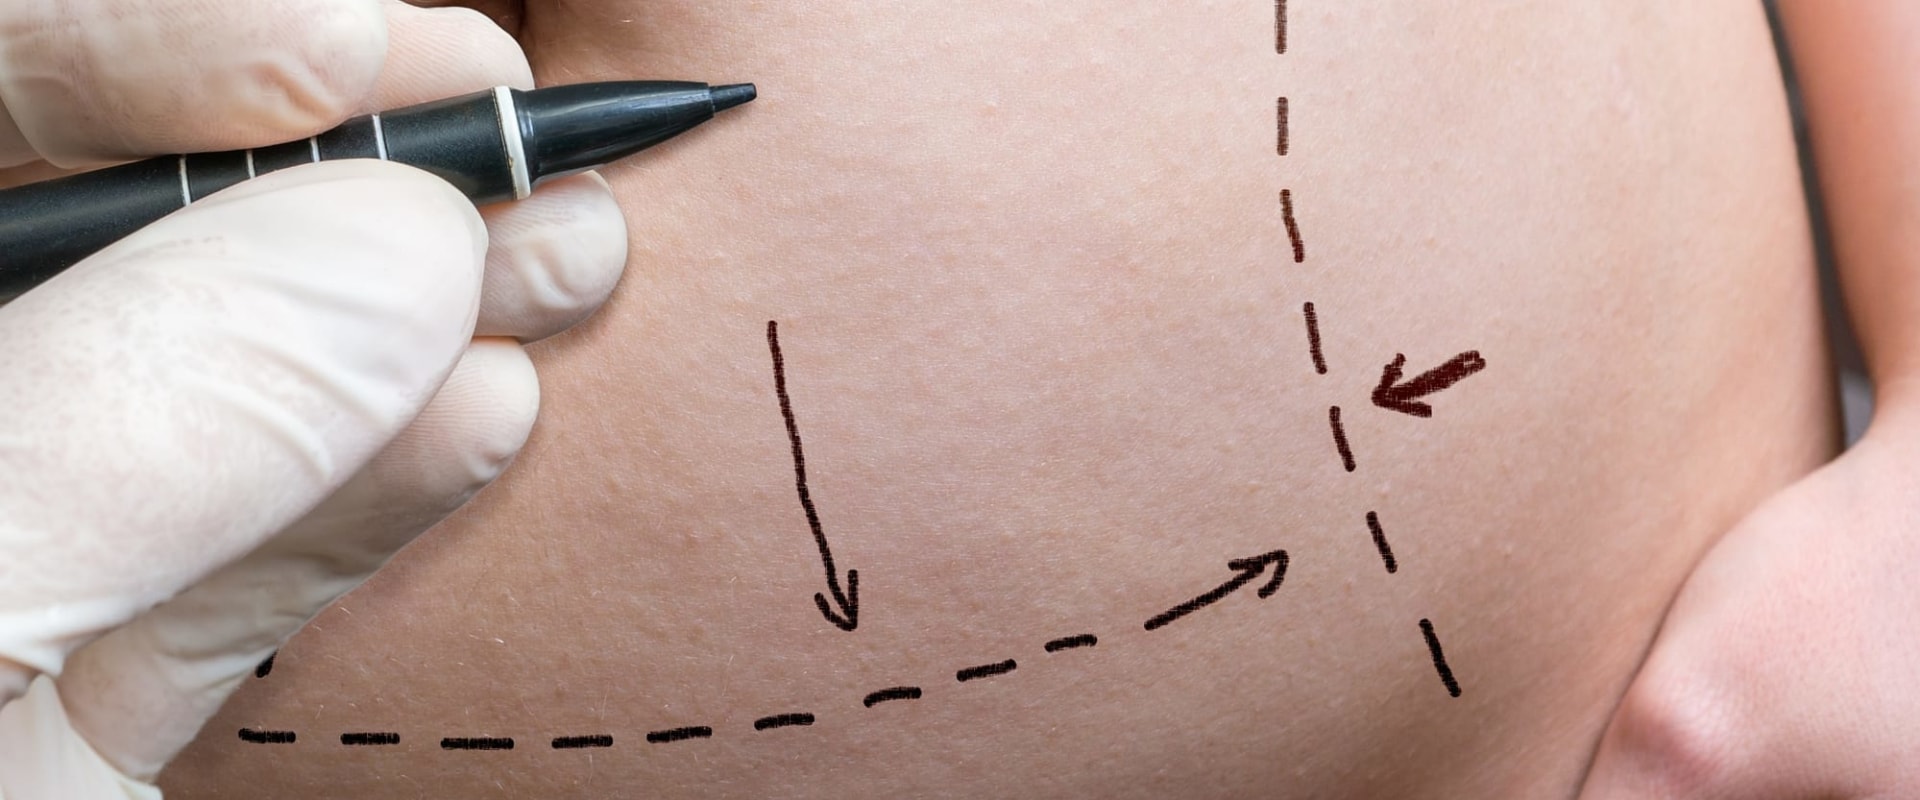 8 Popular Non-Invasive Fat Reduction Procedures